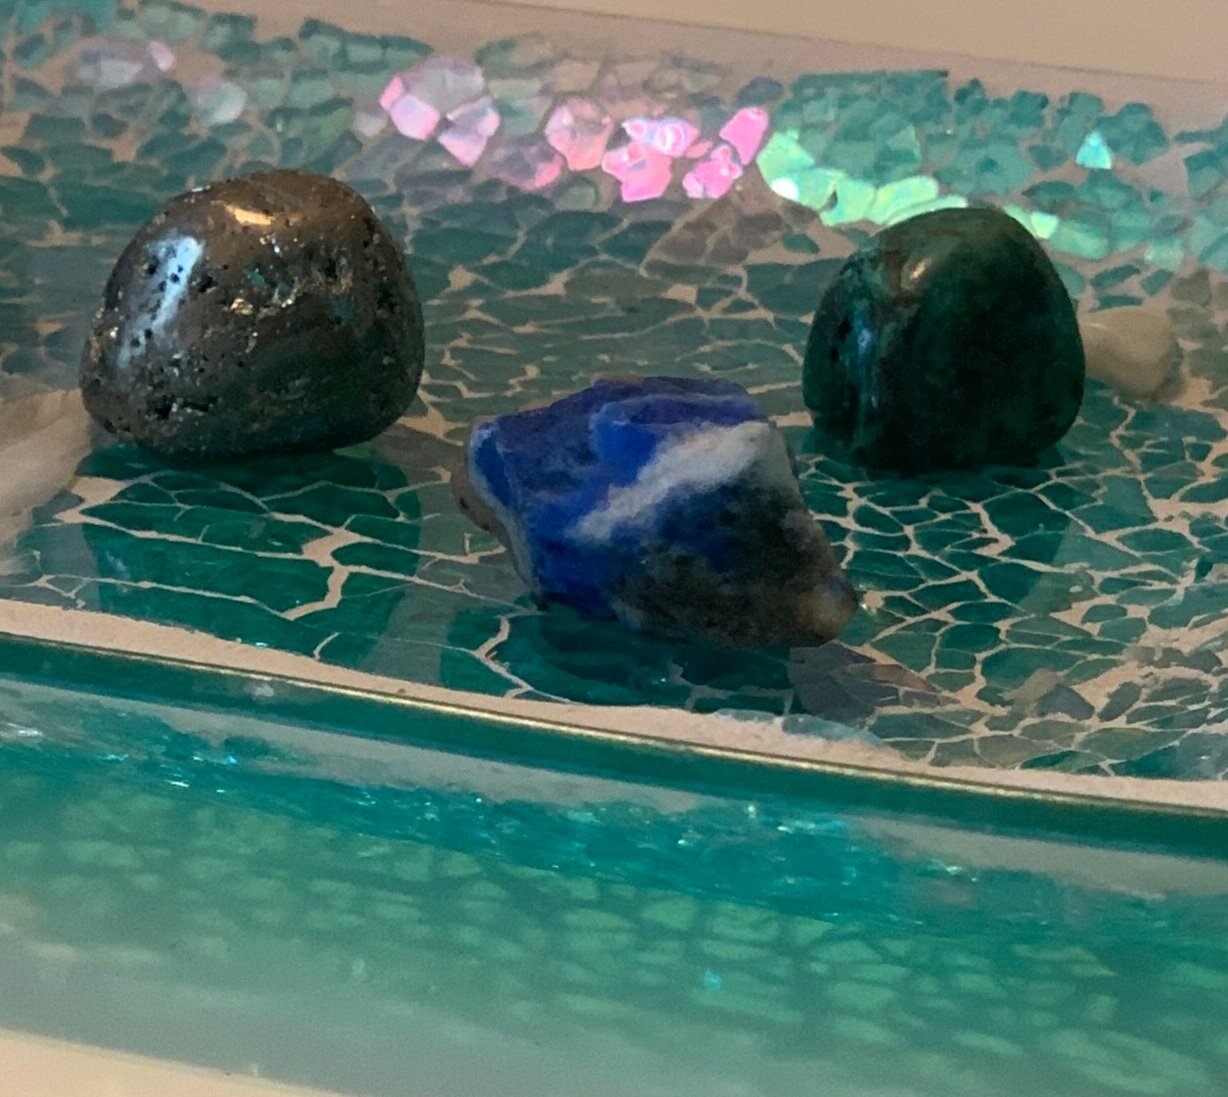 Lapis lazuli, pyrite, or chrysocolla